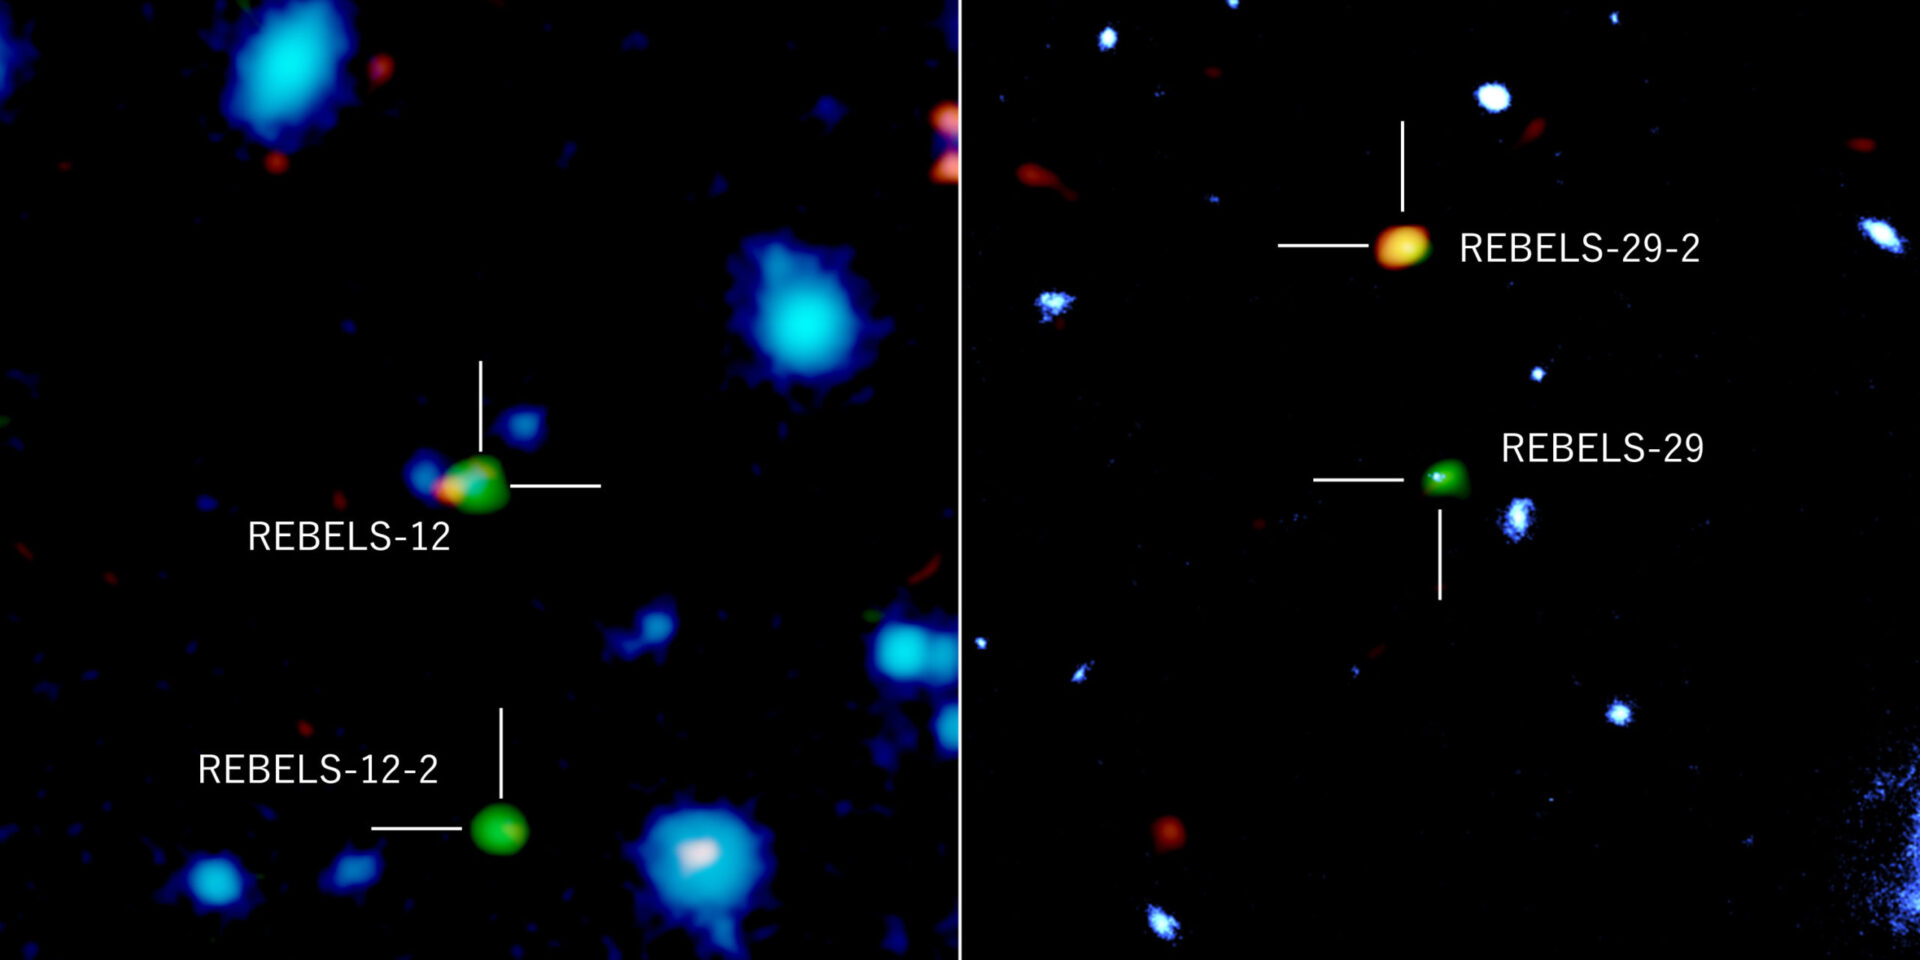 <p>Galaxias distantes fotografiadas con ALMA, el telescopio espacial Hubble y el telescopio VISTA del Observatorio Europeo Austral. Los colores verde y naranja representan las radiaciones de átomos de carbono ionizados y partículas de polvo, respectivamente, observadas con ALMA, y el azul representa la radiación del infrarrojo cercano observada con los telescopios espaciales VISTA y Hubble. REBELS-12 y REBELS-29 detectaron tanto la radiación del infrarrojo cercano como la radiación de átomos de carbono ionizados y polvo. Por otro lado, REBELS-12-2 y REBELS-29-2 no se han detectado en el infrarrojo cercano, lo que sugiere que estas galaxias están profundamente enterradas en polvo. Crédito: ALMA (ESO / NAOJ / NRAO), NASA / ESA Hubble Space Telescope, ESO, Fudamoto et al.</p>
